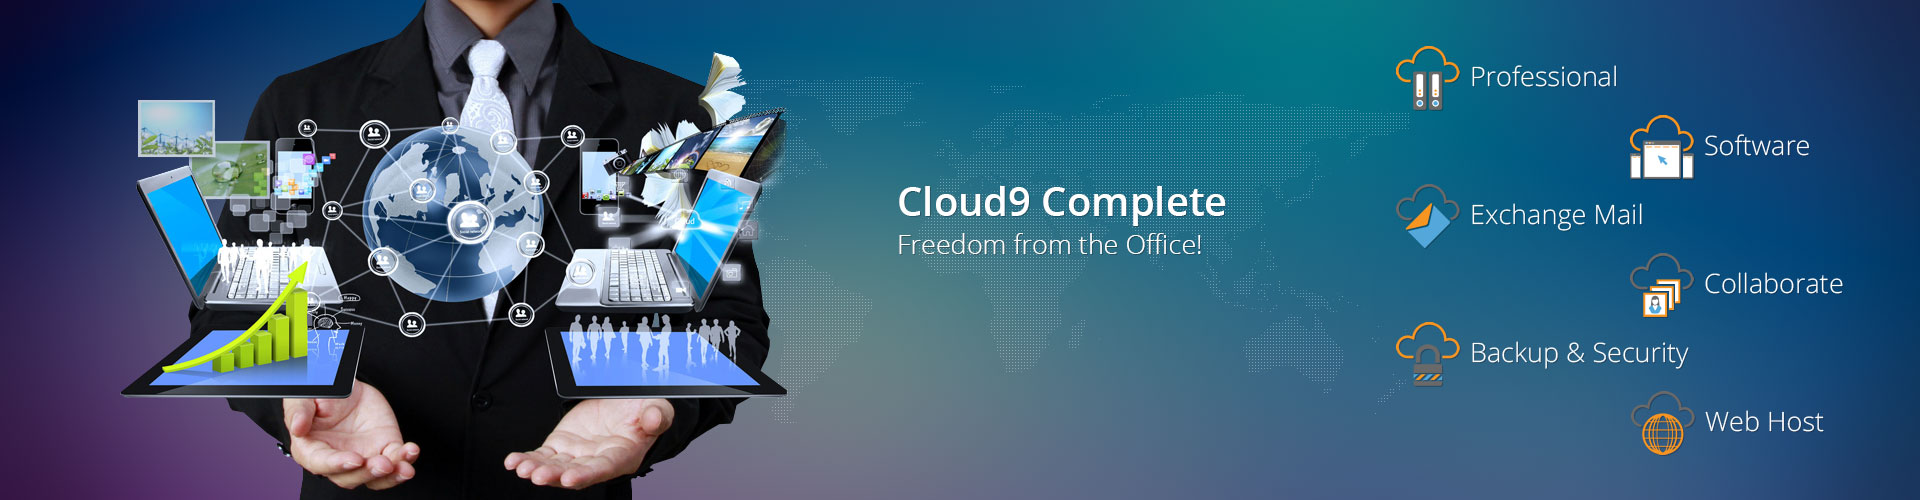 Complete Business Cloud Solution Oc Cloud 9